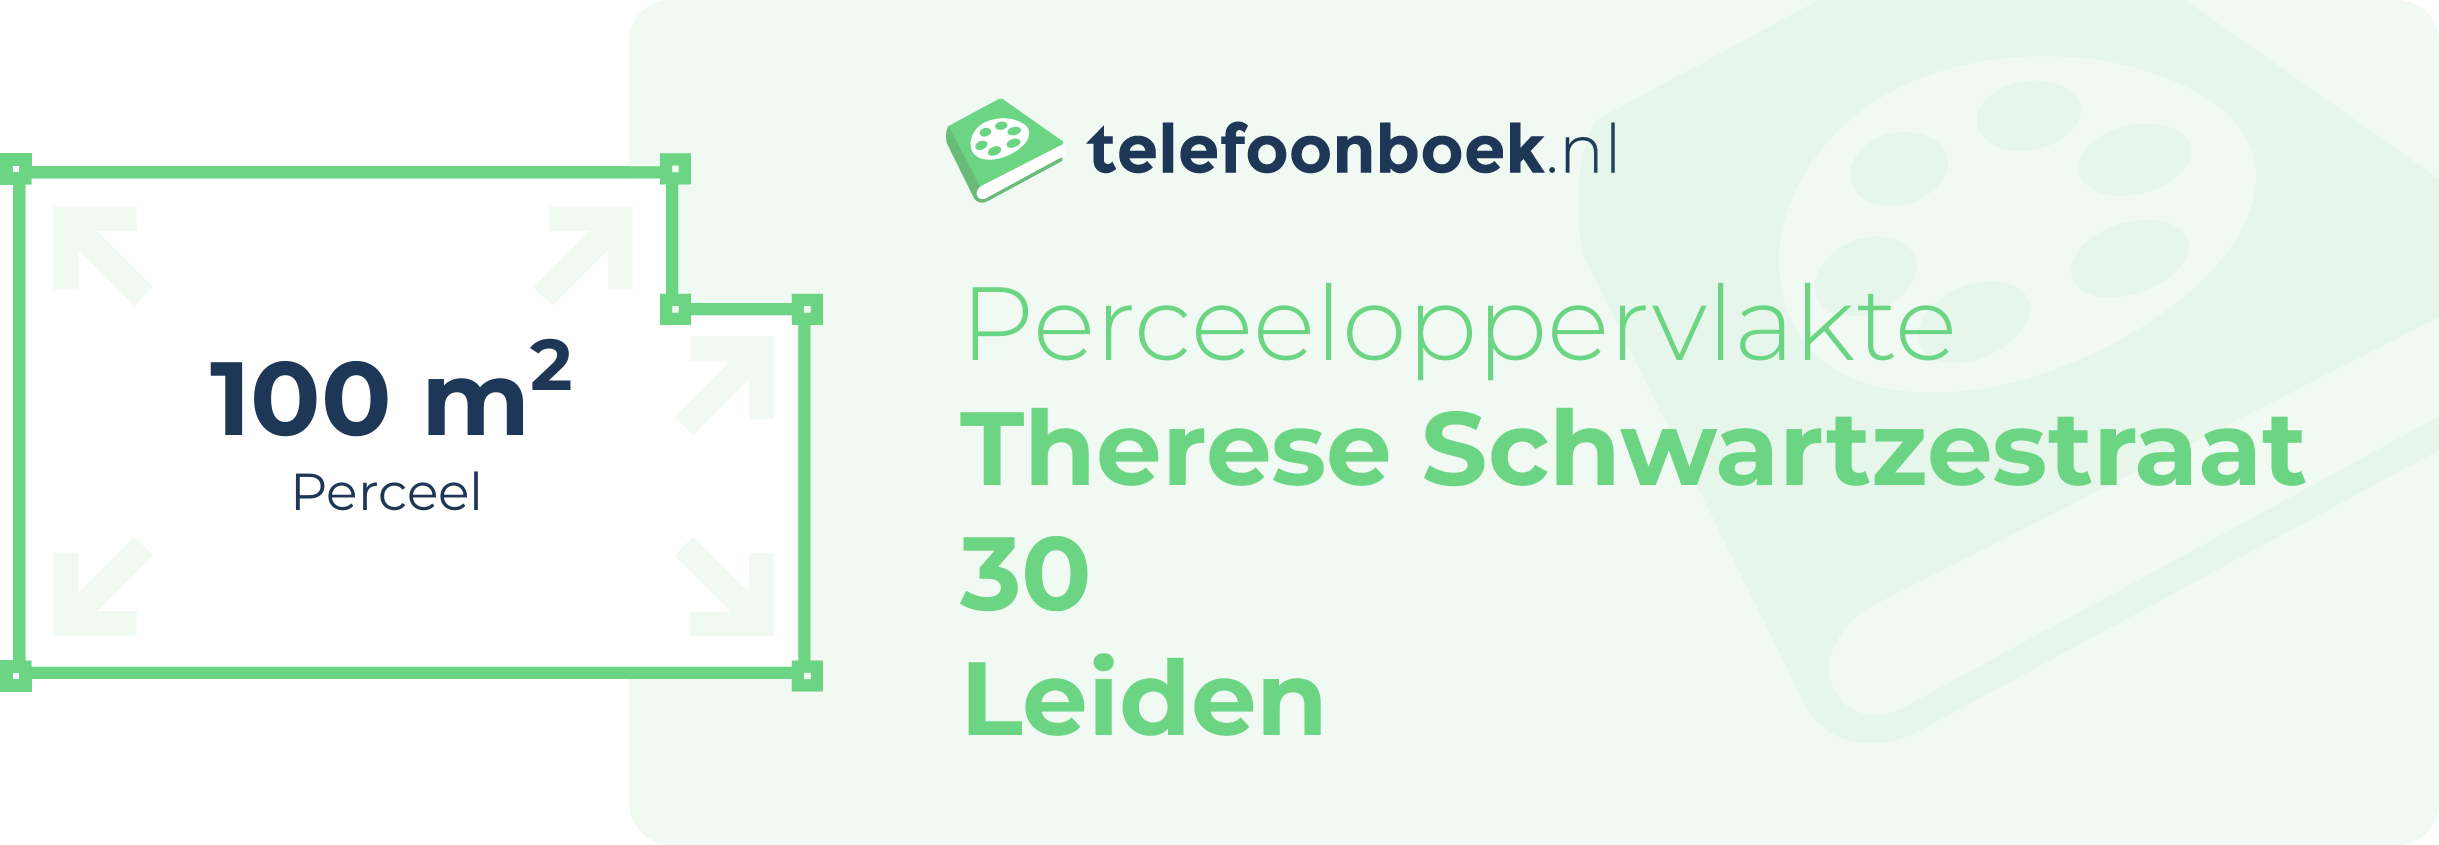 Perceeloppervlakte Therese Schwartzestraat 30 Leiden